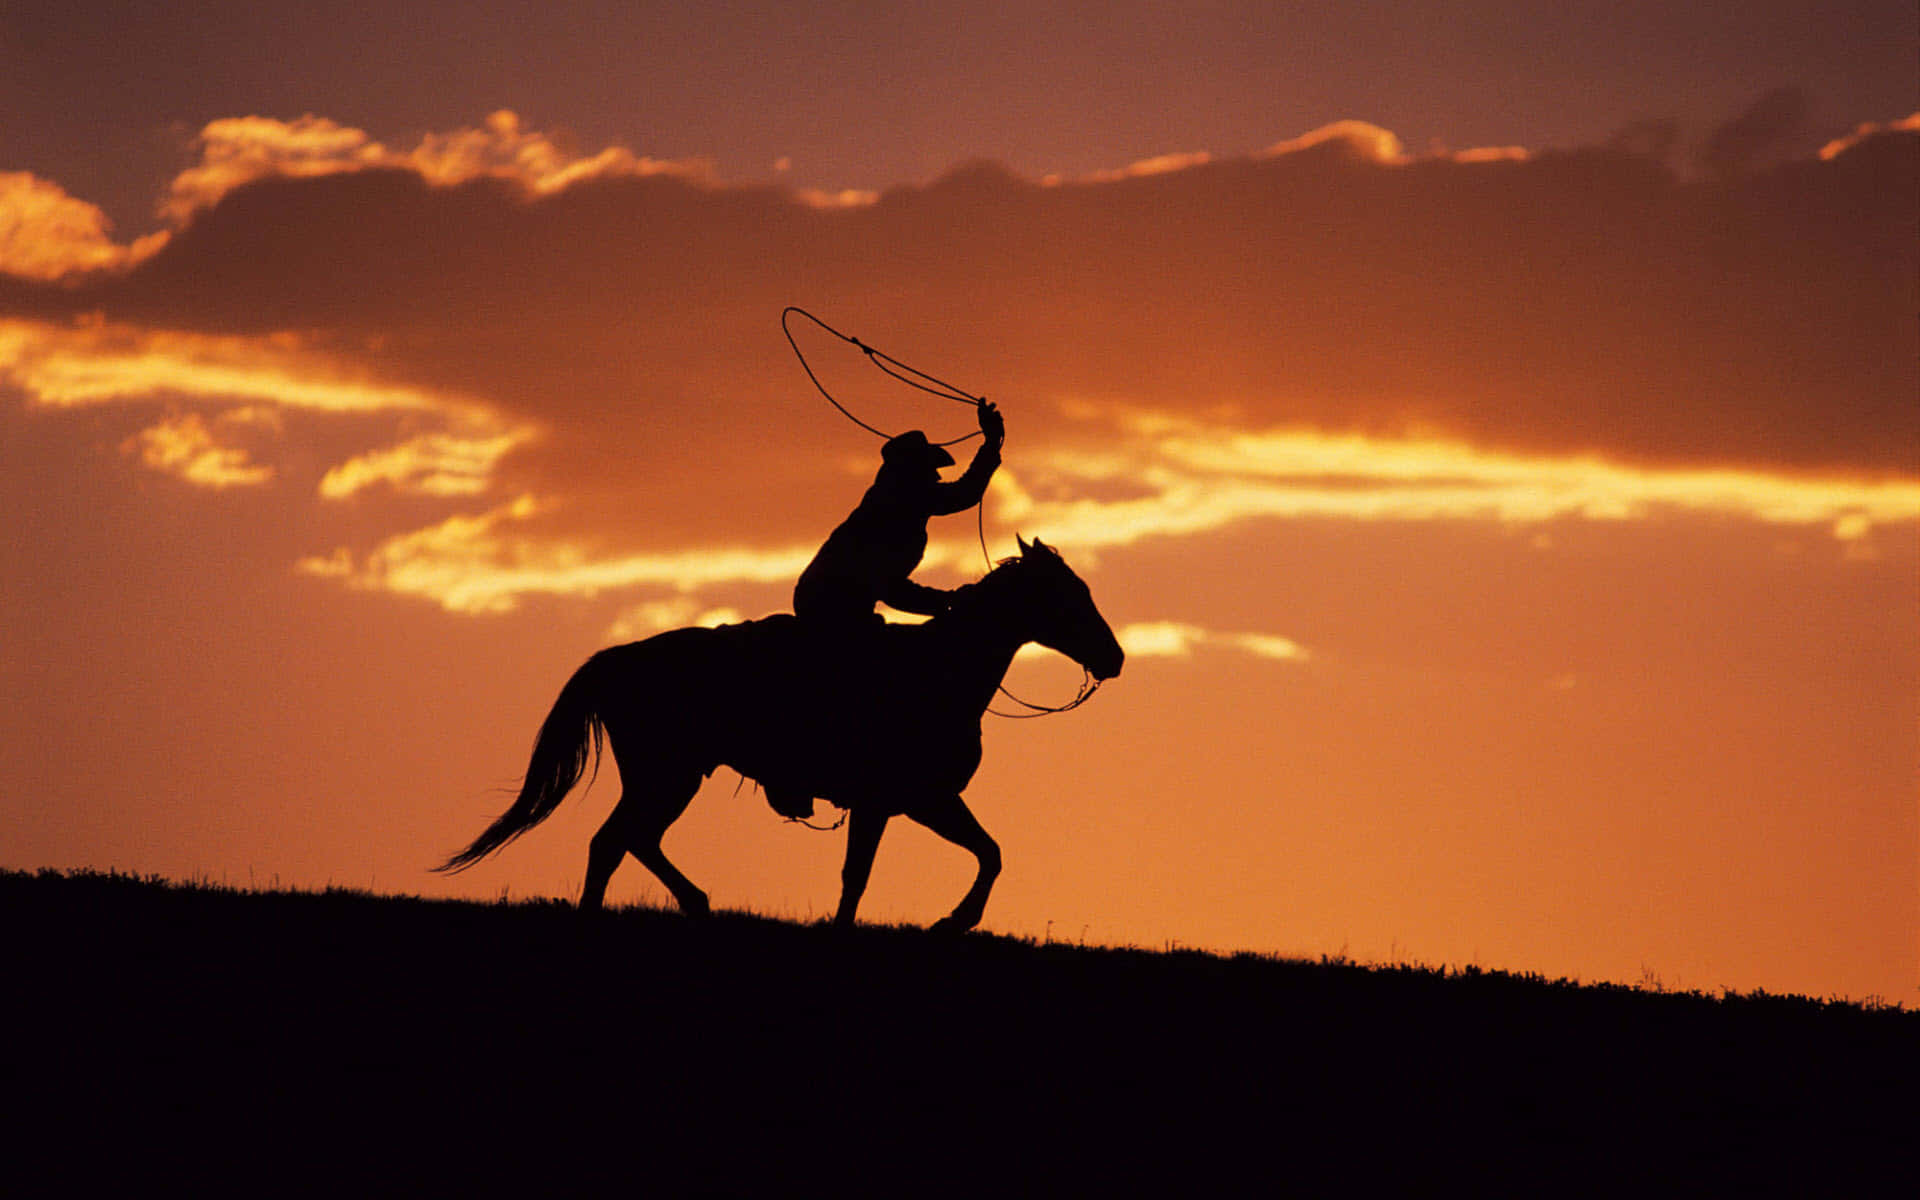 Encowboy Fra Wild West Afbildet I En Cowboyhat, Der Holder Et Gevær.